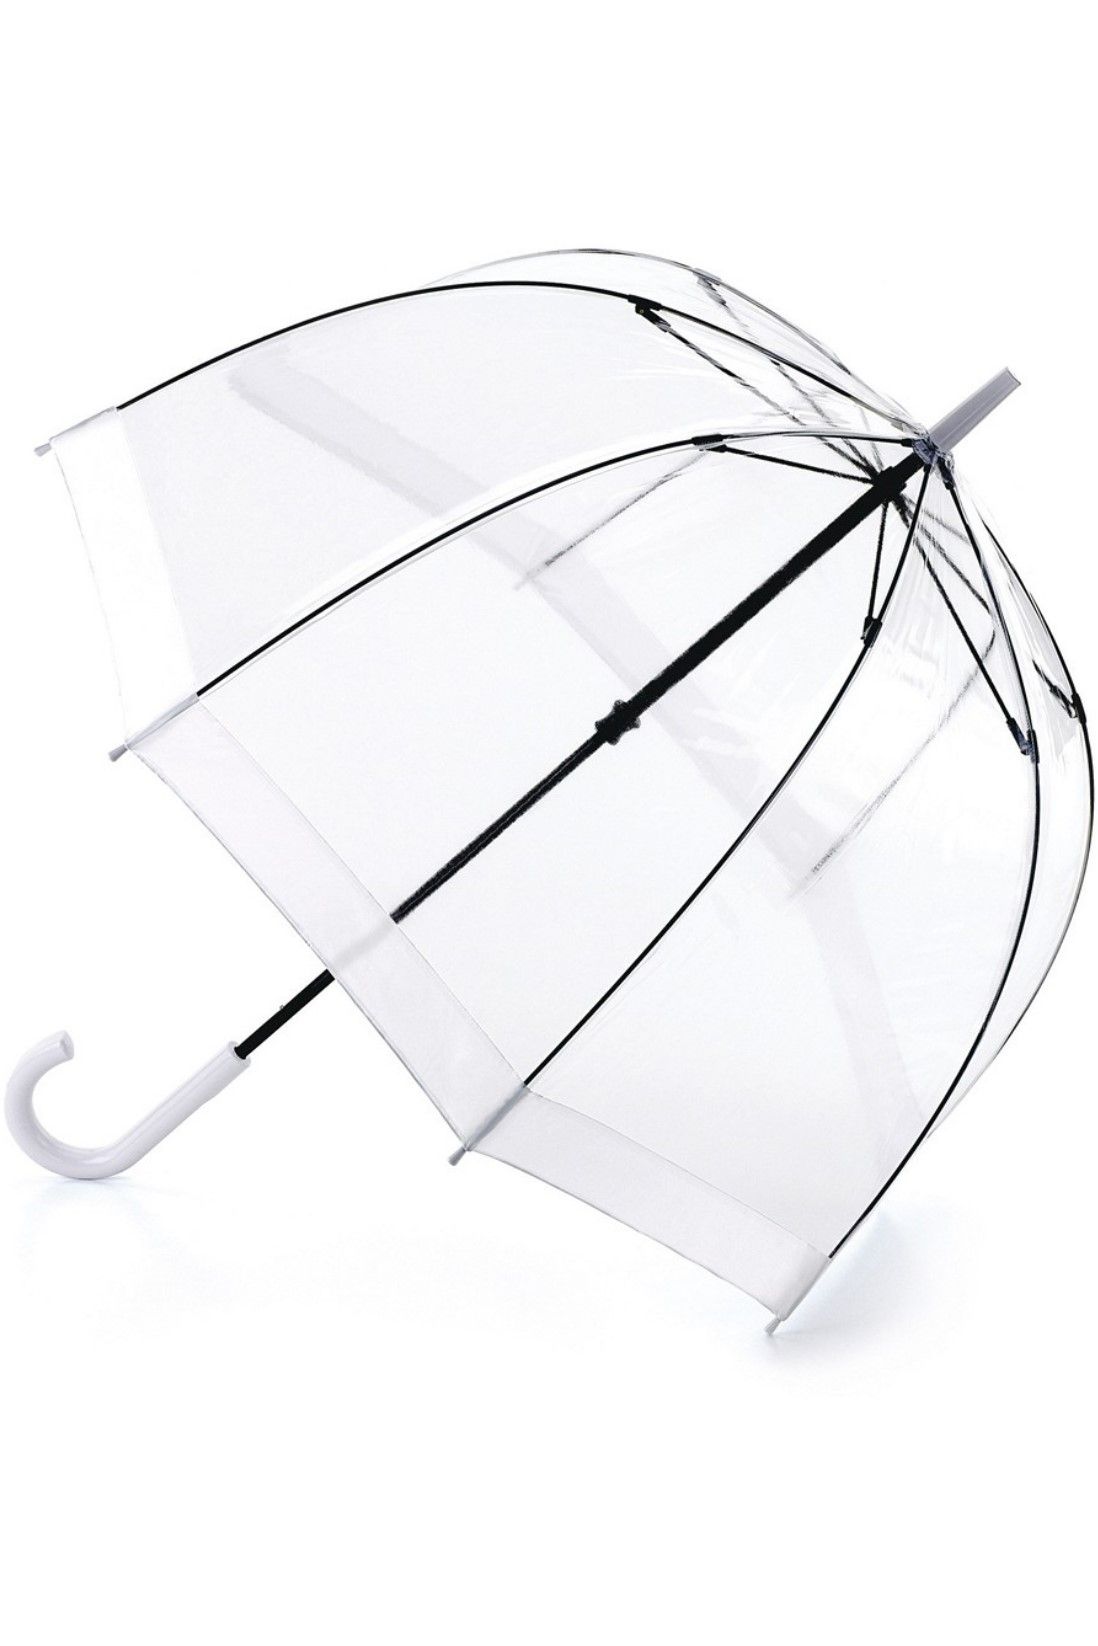 Прозрачные зонтики купить. Зонт трость Fulton. Fulton трость зонт белый. Большой прозрачный зонт-трость Fulton s841-004 Clear Clearview-1. Зонт прозрачный Фултон.